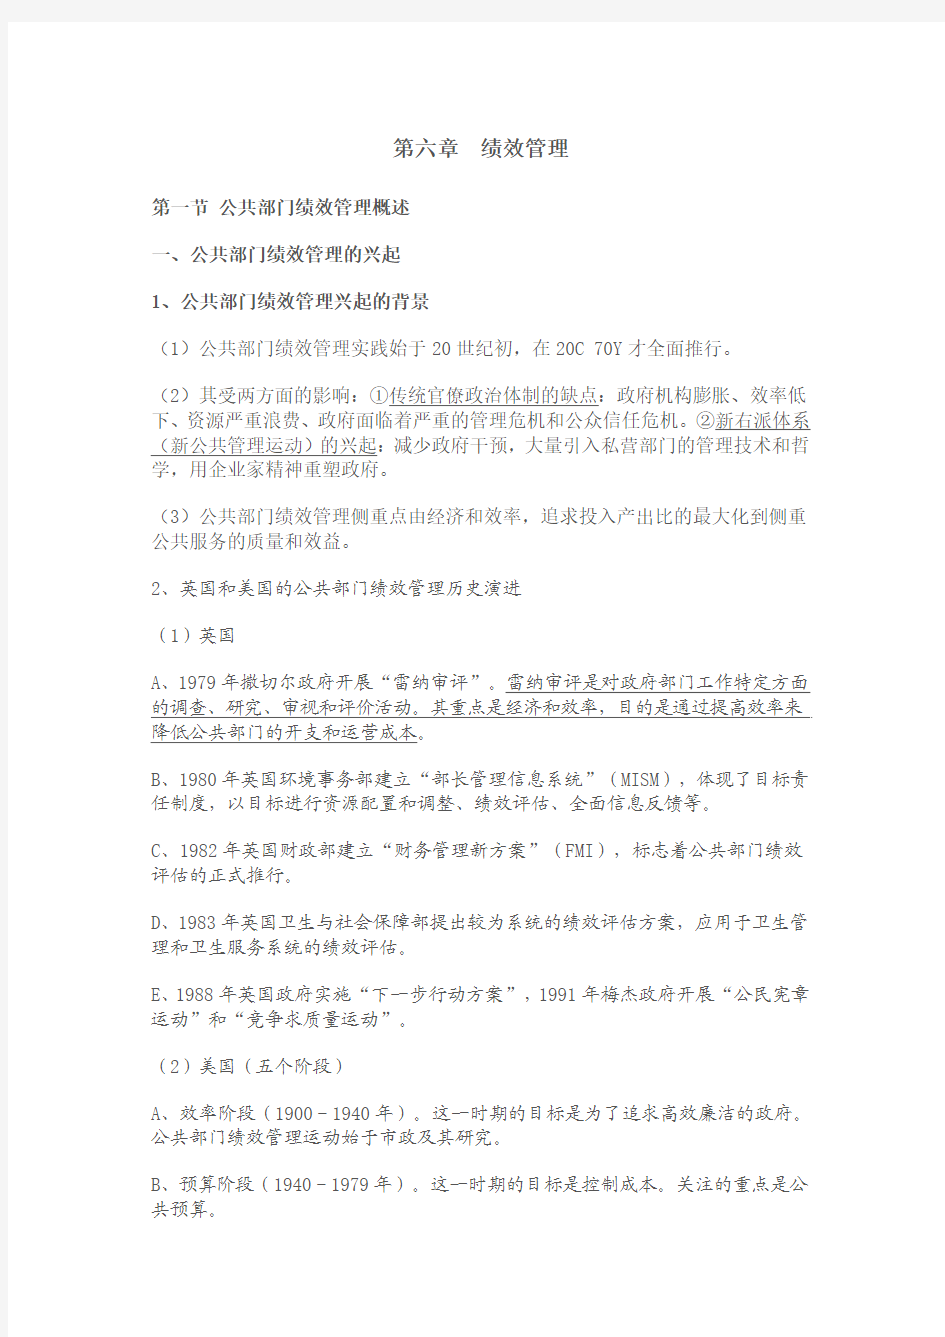 2012年南大社保考研 陈振明 公共管理学笔记 第六章  绩效管理